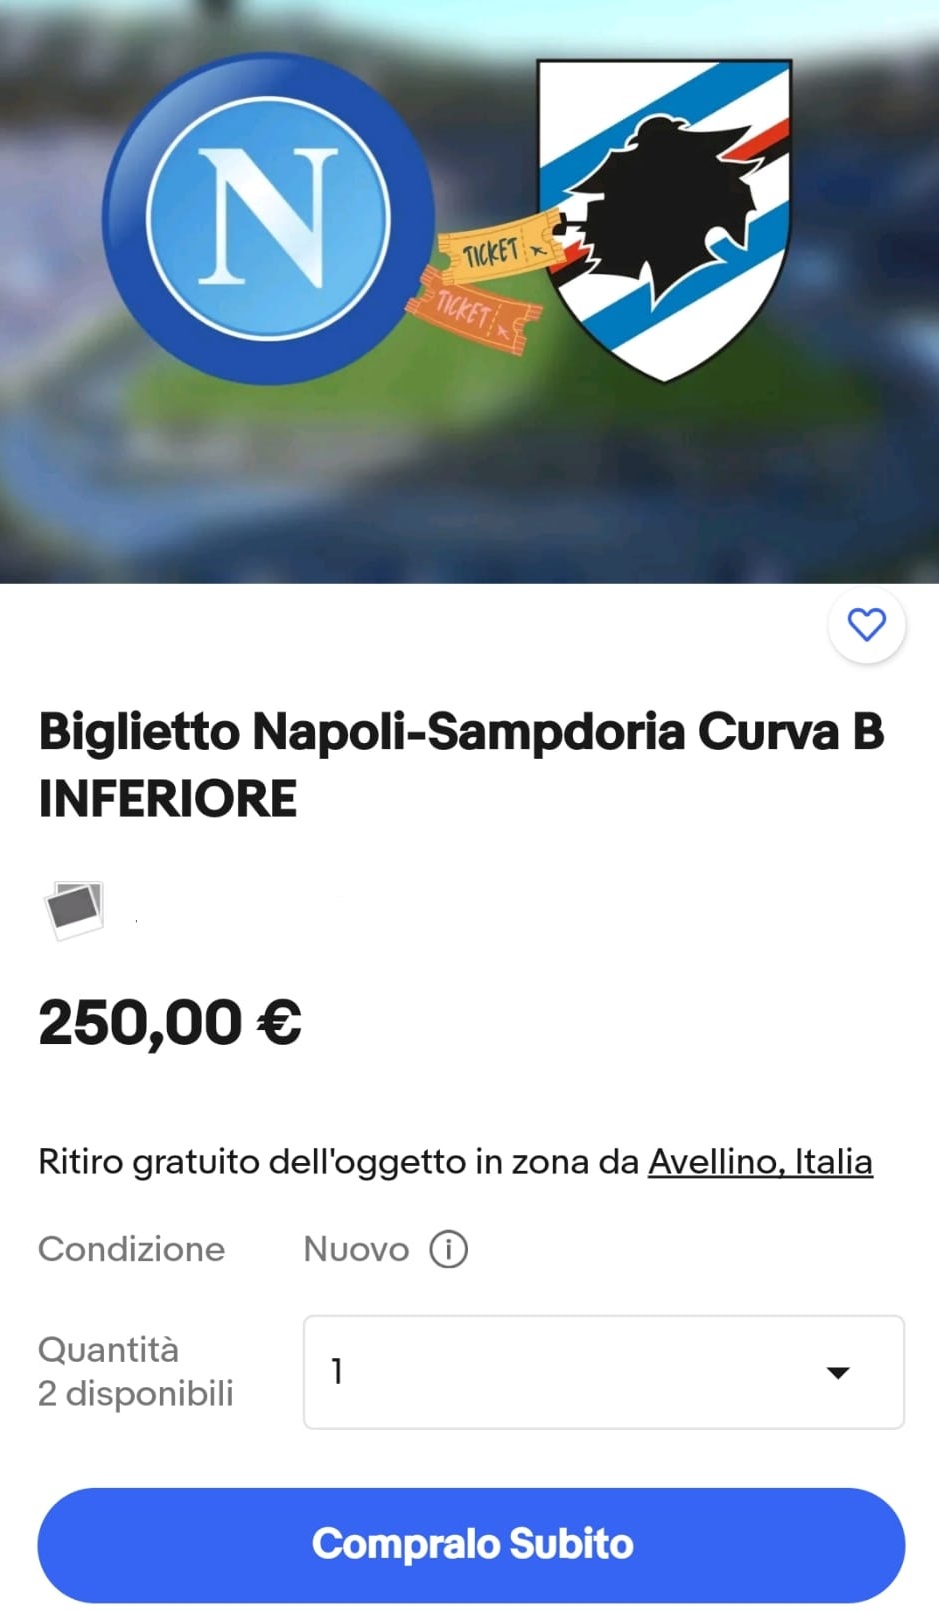 Napoli-Sampdoria, i biglietti da 5 euro venduti online a 250